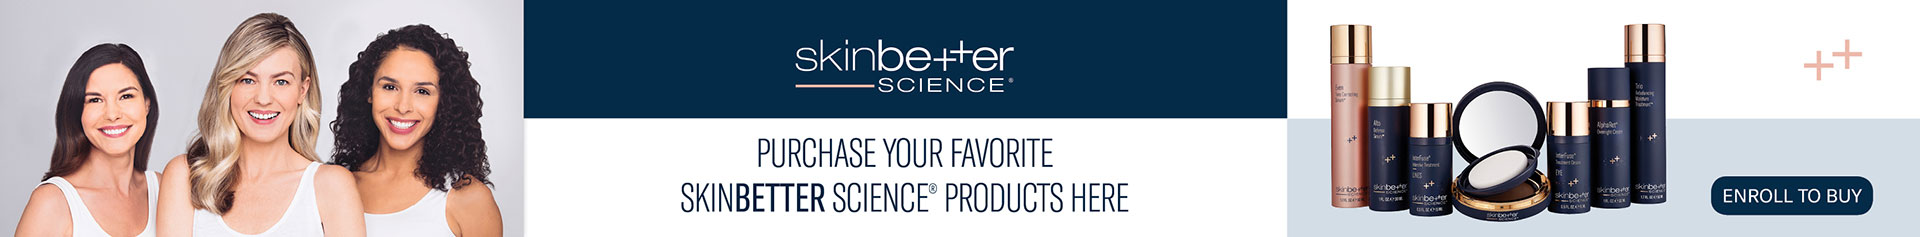 Skin better science banner